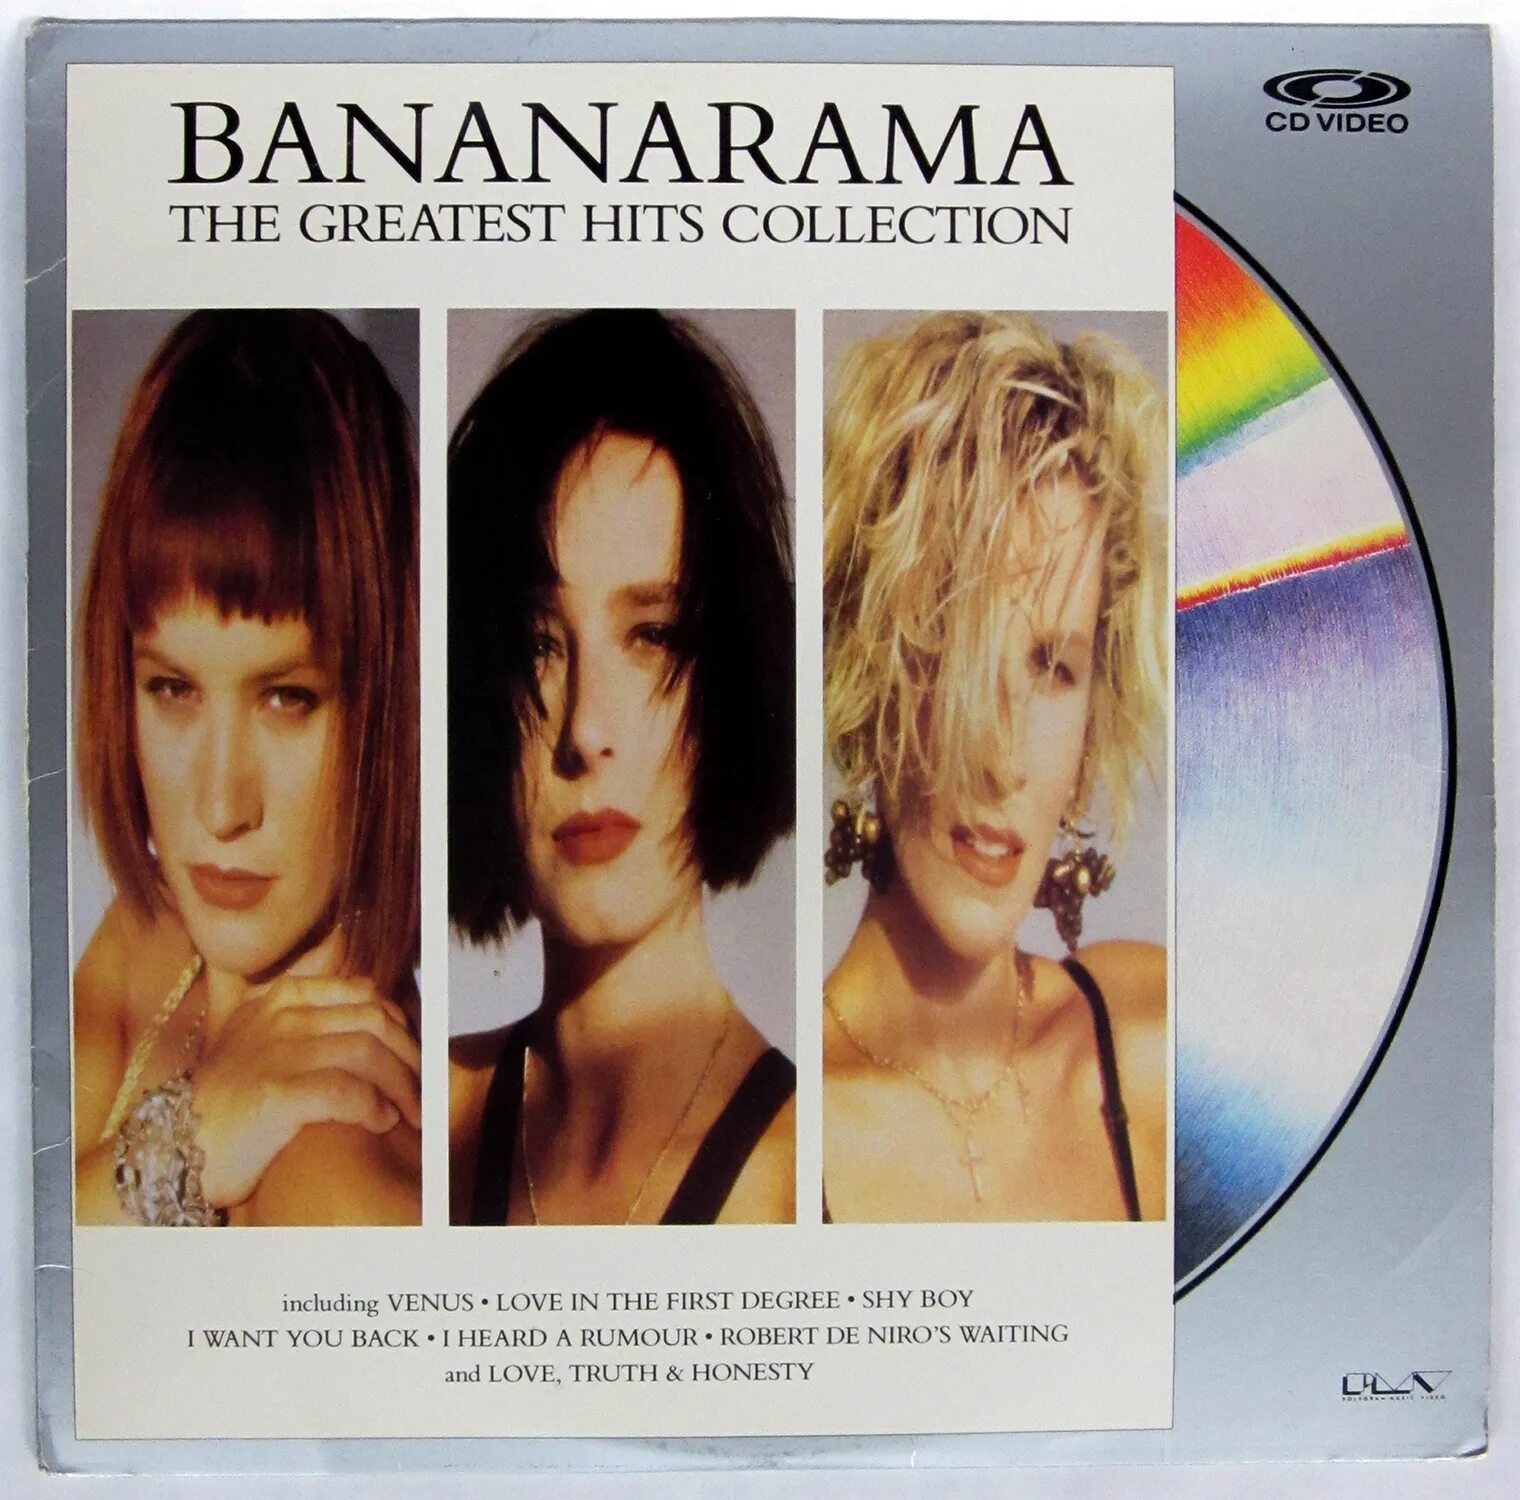 Bananarama 2007. Bananarama Runner обложка. Bananarama Venus обложка. Bananarama "Viva, CD". Greatest hits collection